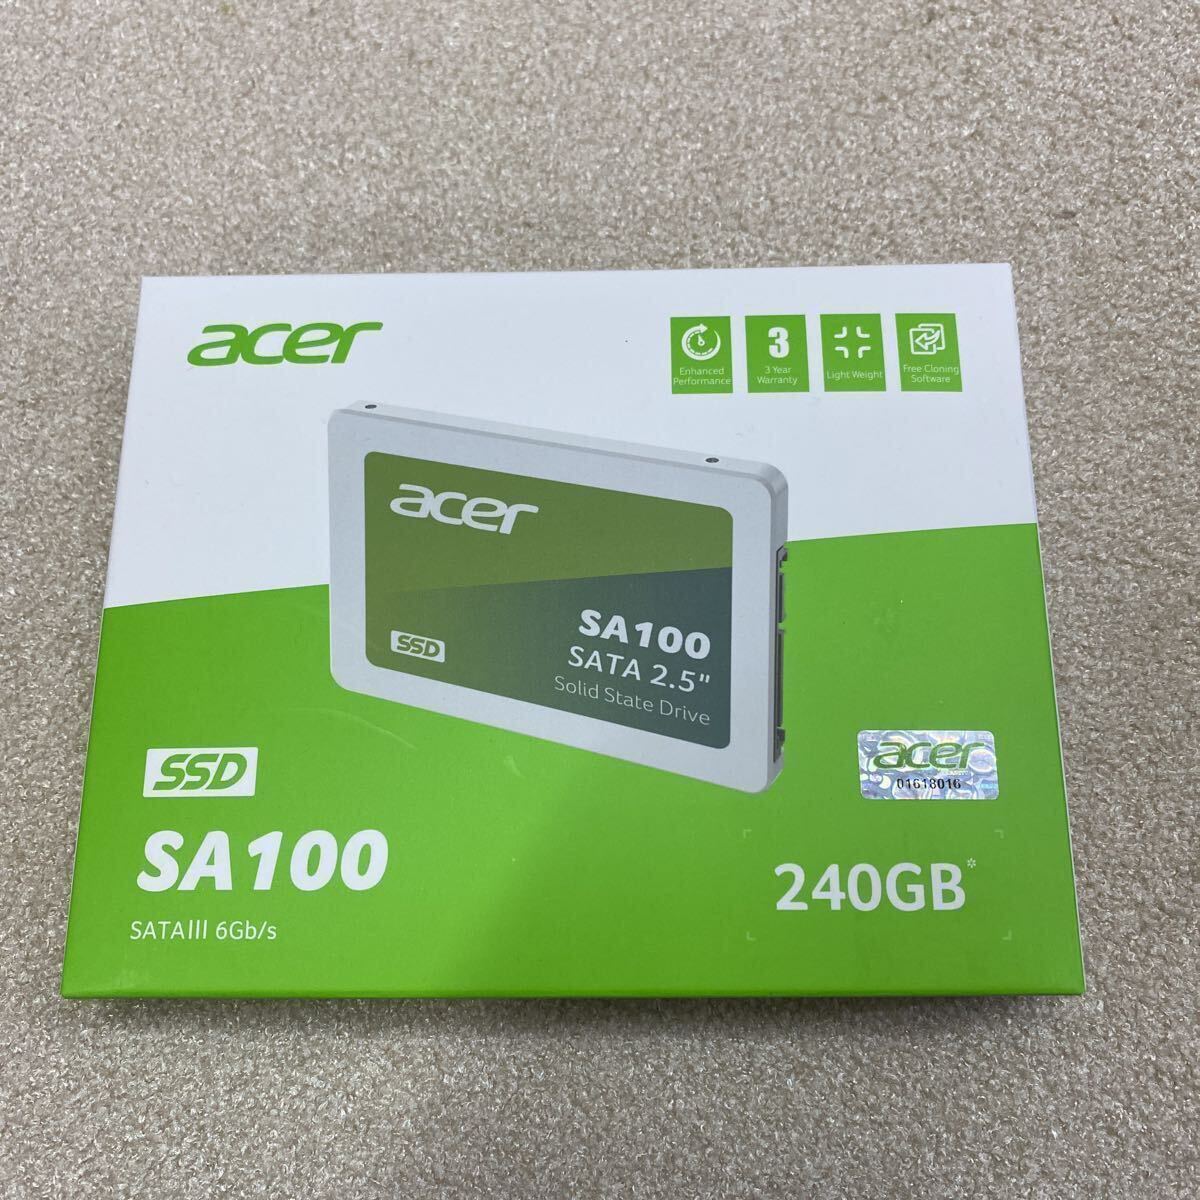 【14】大量購入歓迎 新品未使用未開封品 Acer SA100-240GB 3D NAND SATA 2.5インチSSD 最大読み取り速度560MB/s最大書き込み速度500MB/s_画像1